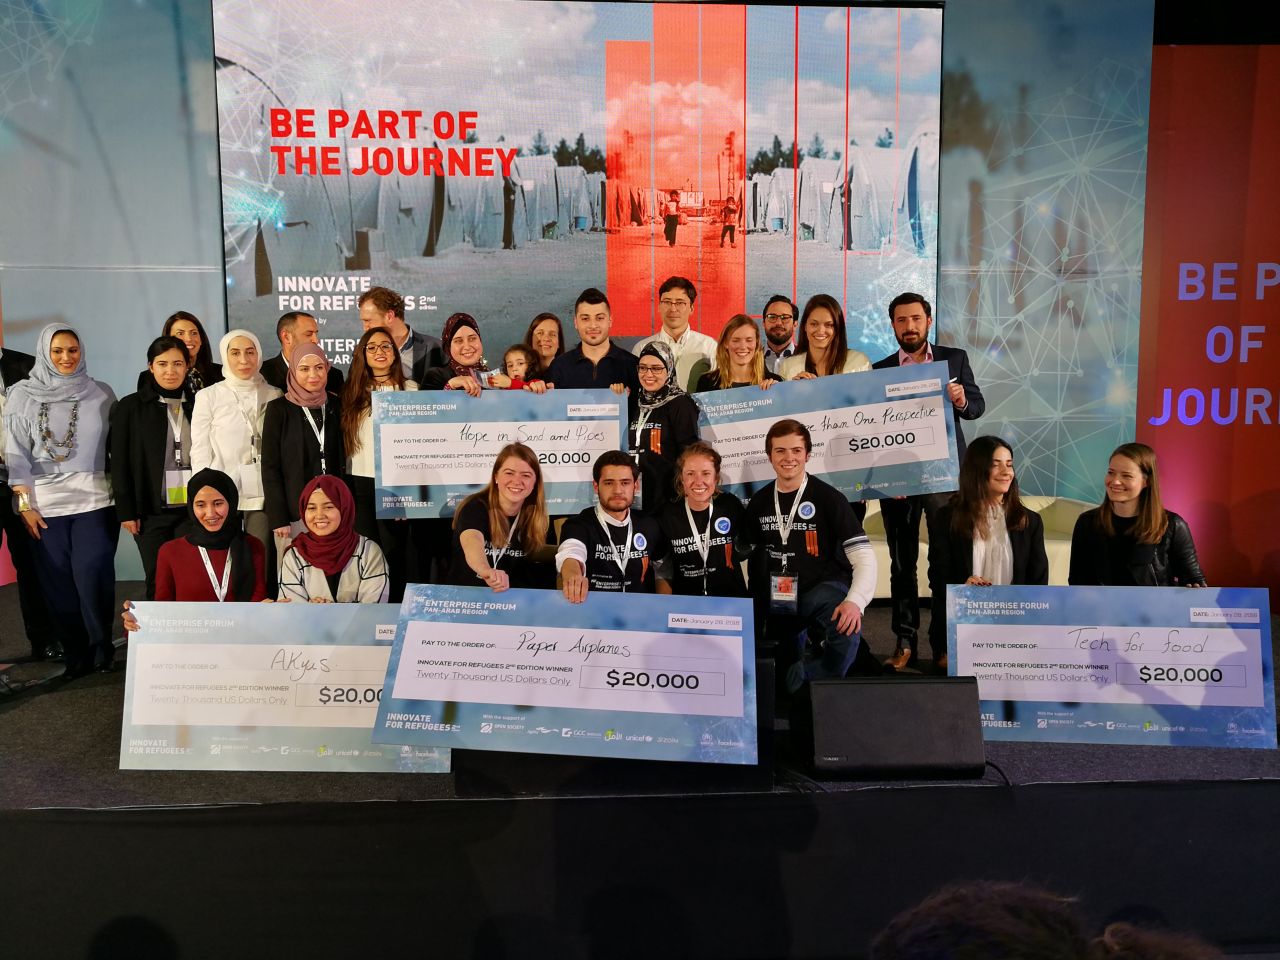 إعلان أسماء الفائزين في مسابقة “ابتكر من أجل اللاجئين” خلال حفل توزيع جوائز المسابقة